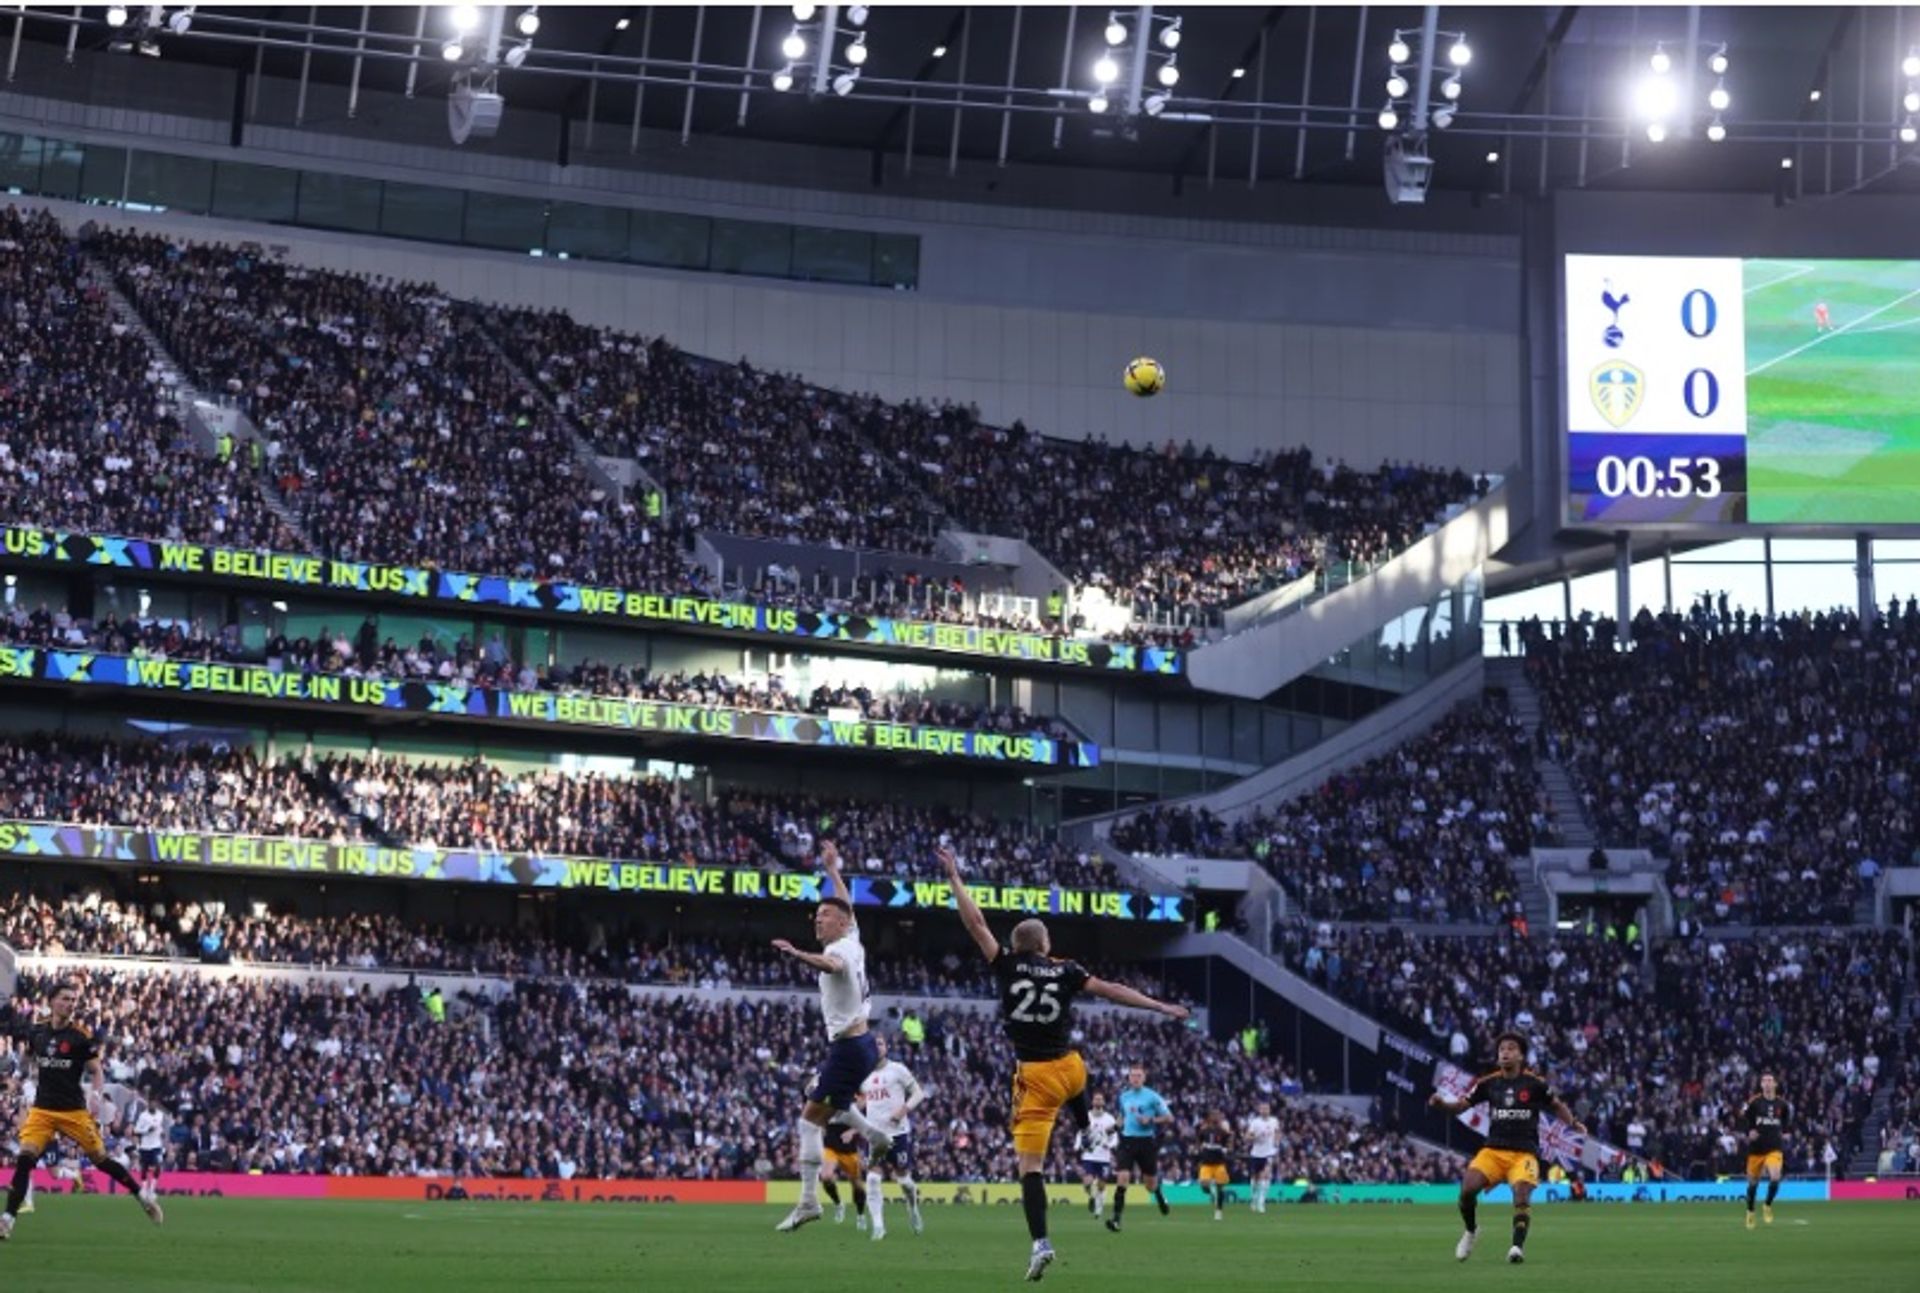 We Believe In Us של מארק טיצ'נר, הוצג באצטדיון טוטנהאם הוטספר, 12 בנובמבר 2022. 

באדיבות Tottenham Hotspur FC, Getty Images ו- OOF Gallery